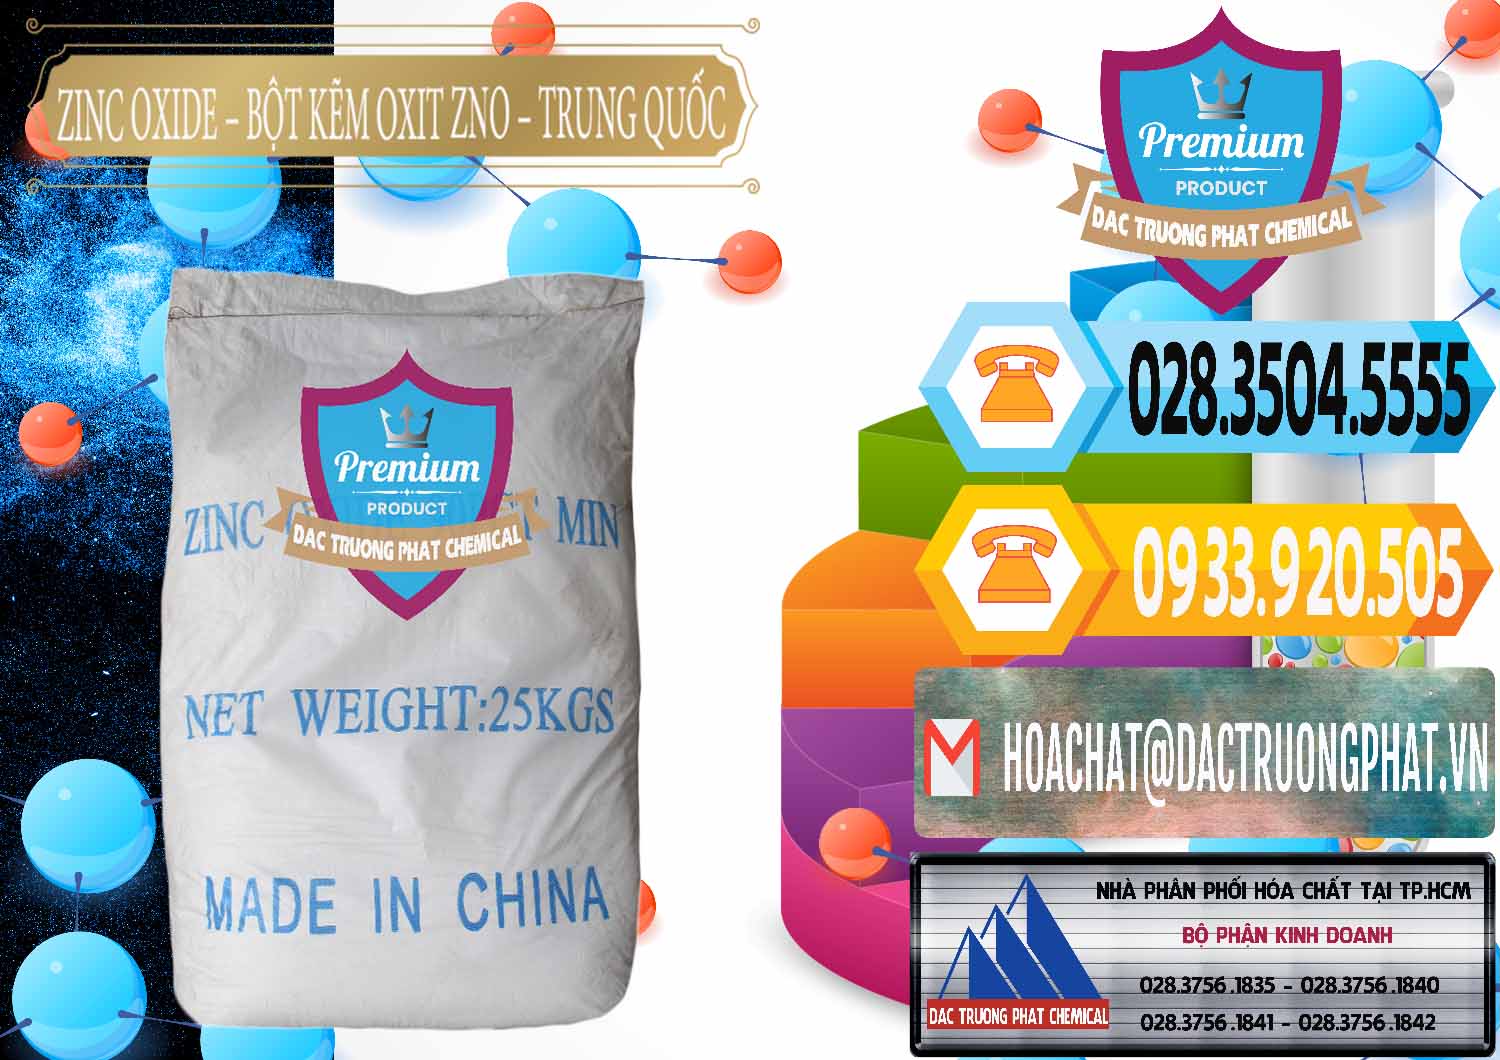 Công ty chuyên bán và cung ứng Zinc Oxide - Bột Kẽm Oxit ZNO Trung Quốc China - 0182 - Cung cấp và kinh doanh hóa chất tại TP.HCM - hoachattayrua.net